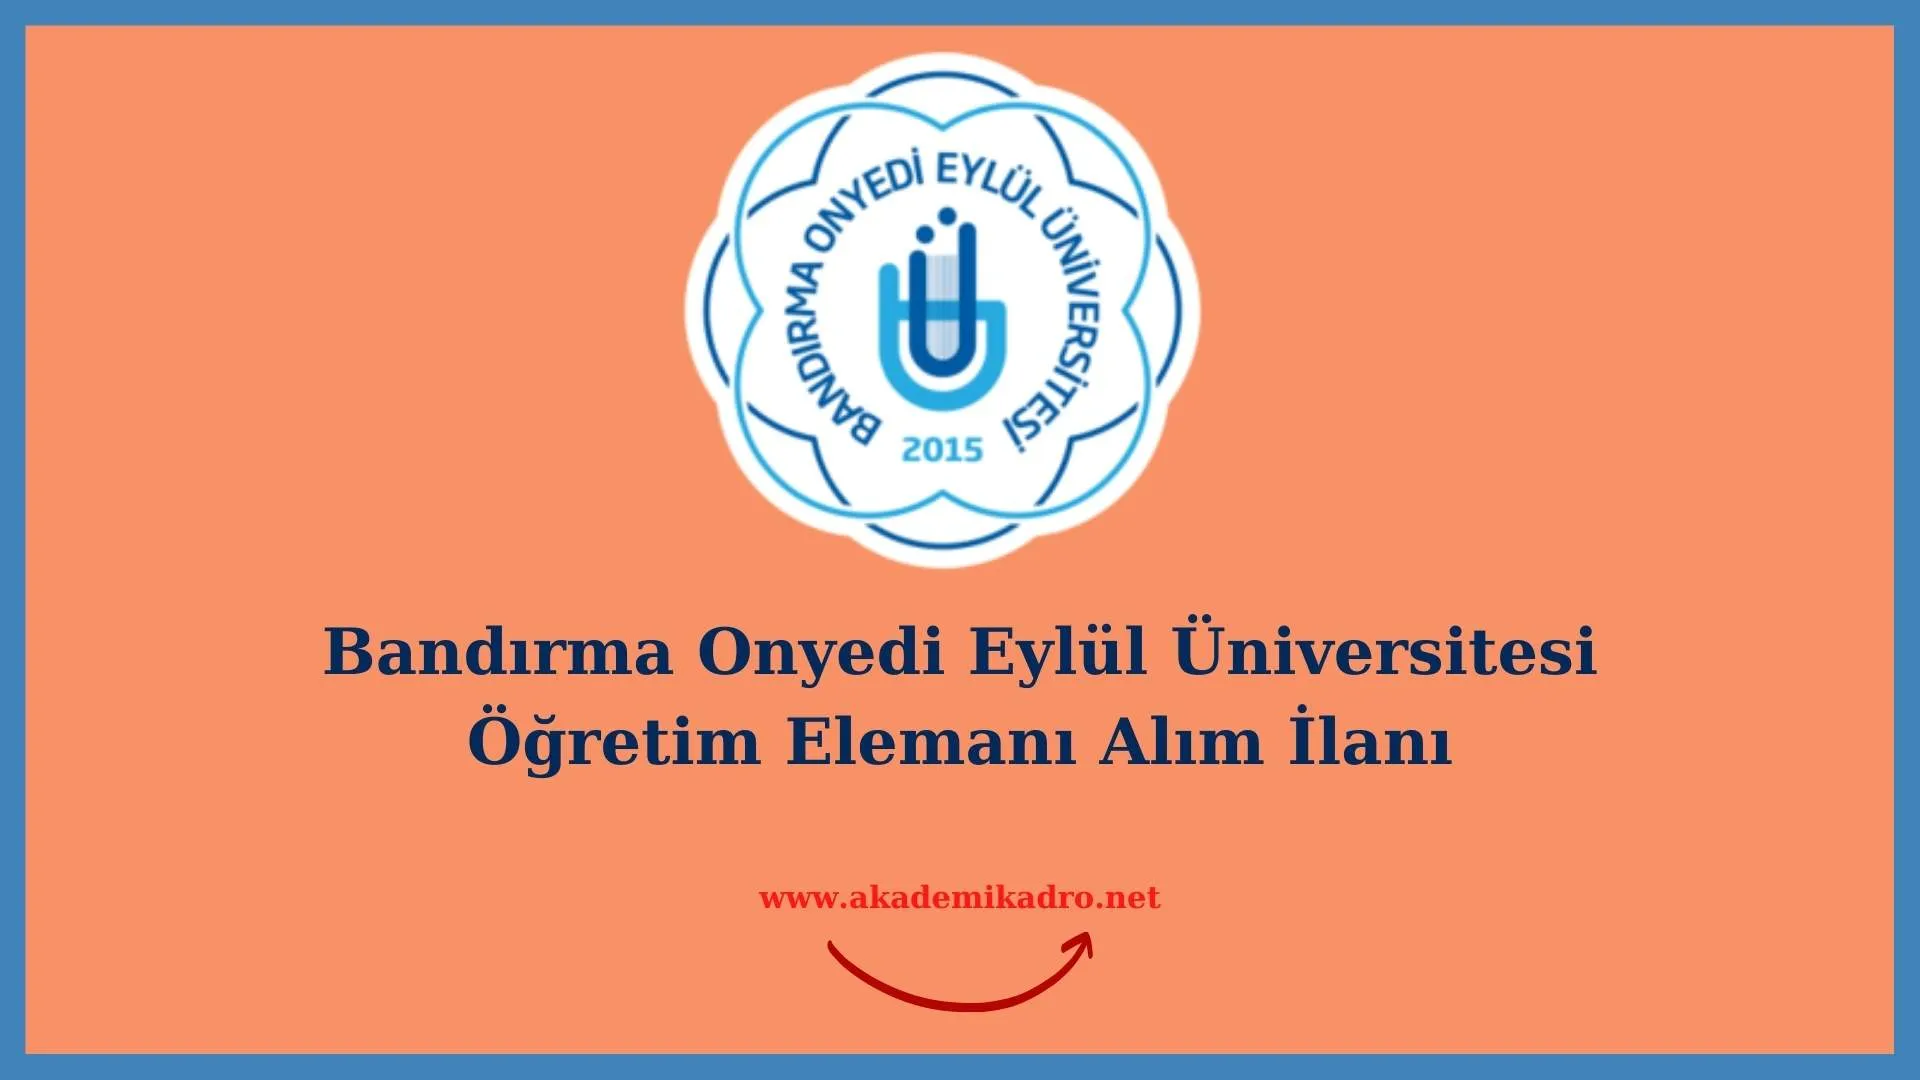 Bandırma Onyedi Eylül Üniversitesi öğretim görevlisi ve çeşitli branşlarda öğretim üyesi alacak. Son başvuru tarihi 1 Eylül 2022.